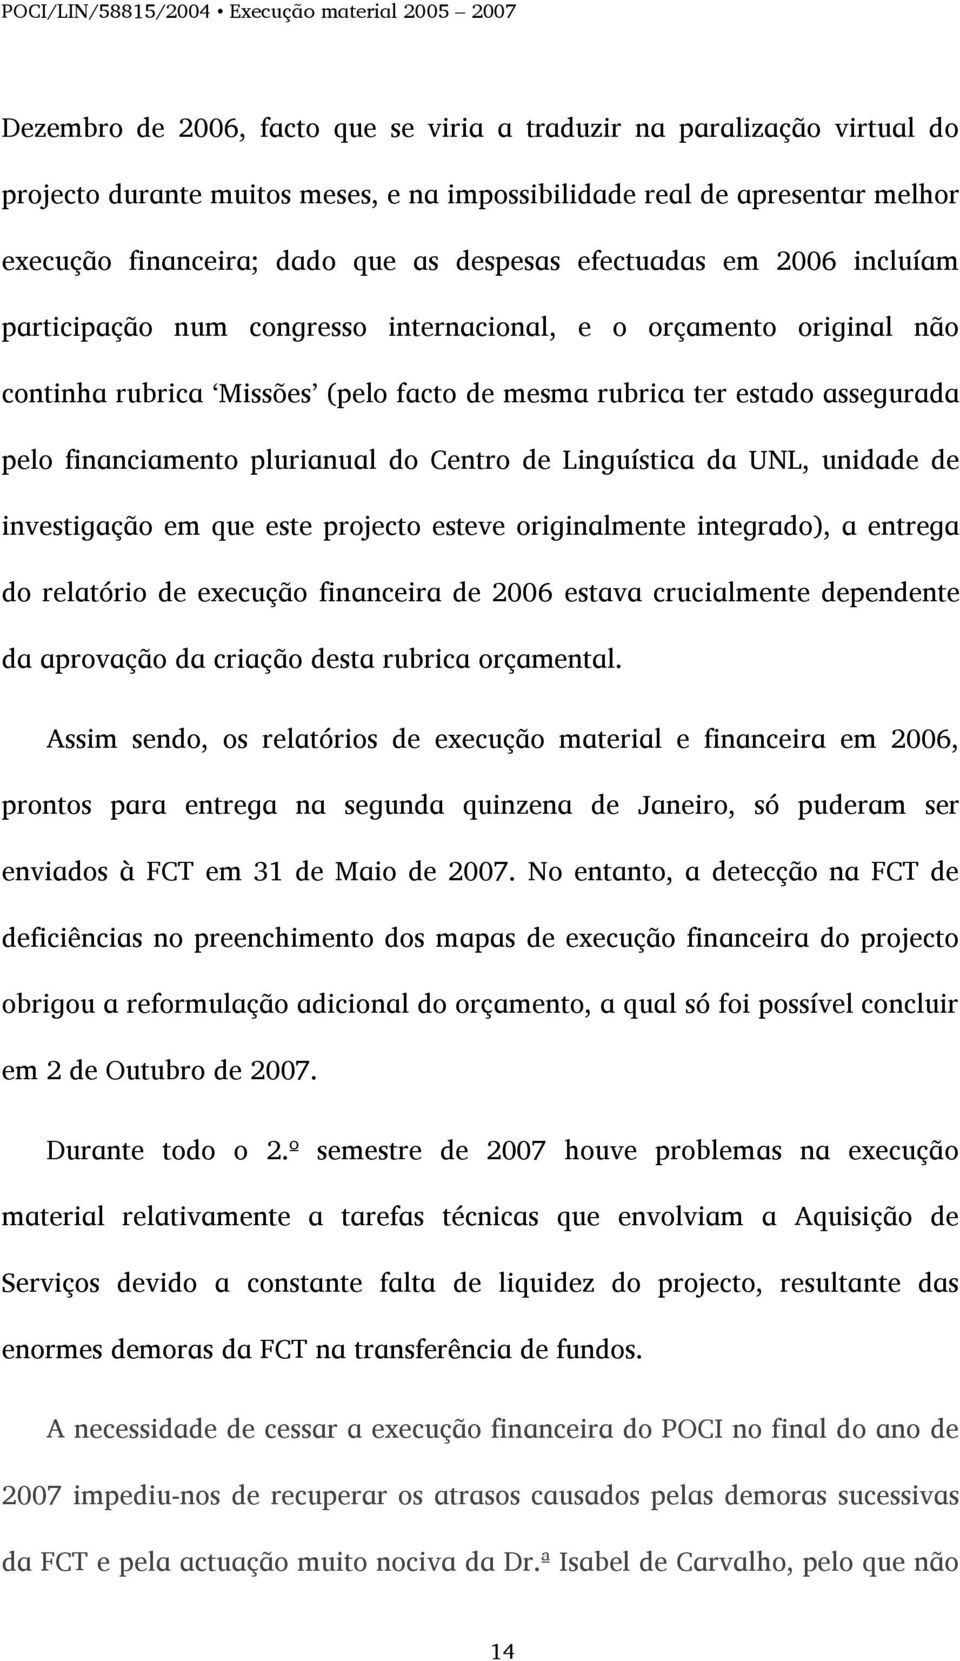 plurianual do Centro de Linguística da UNL, unidade de investigação em que este projecto esteve originalmente integrado), a entrega do relatório de execução financeira de 2006 estava crucialmente